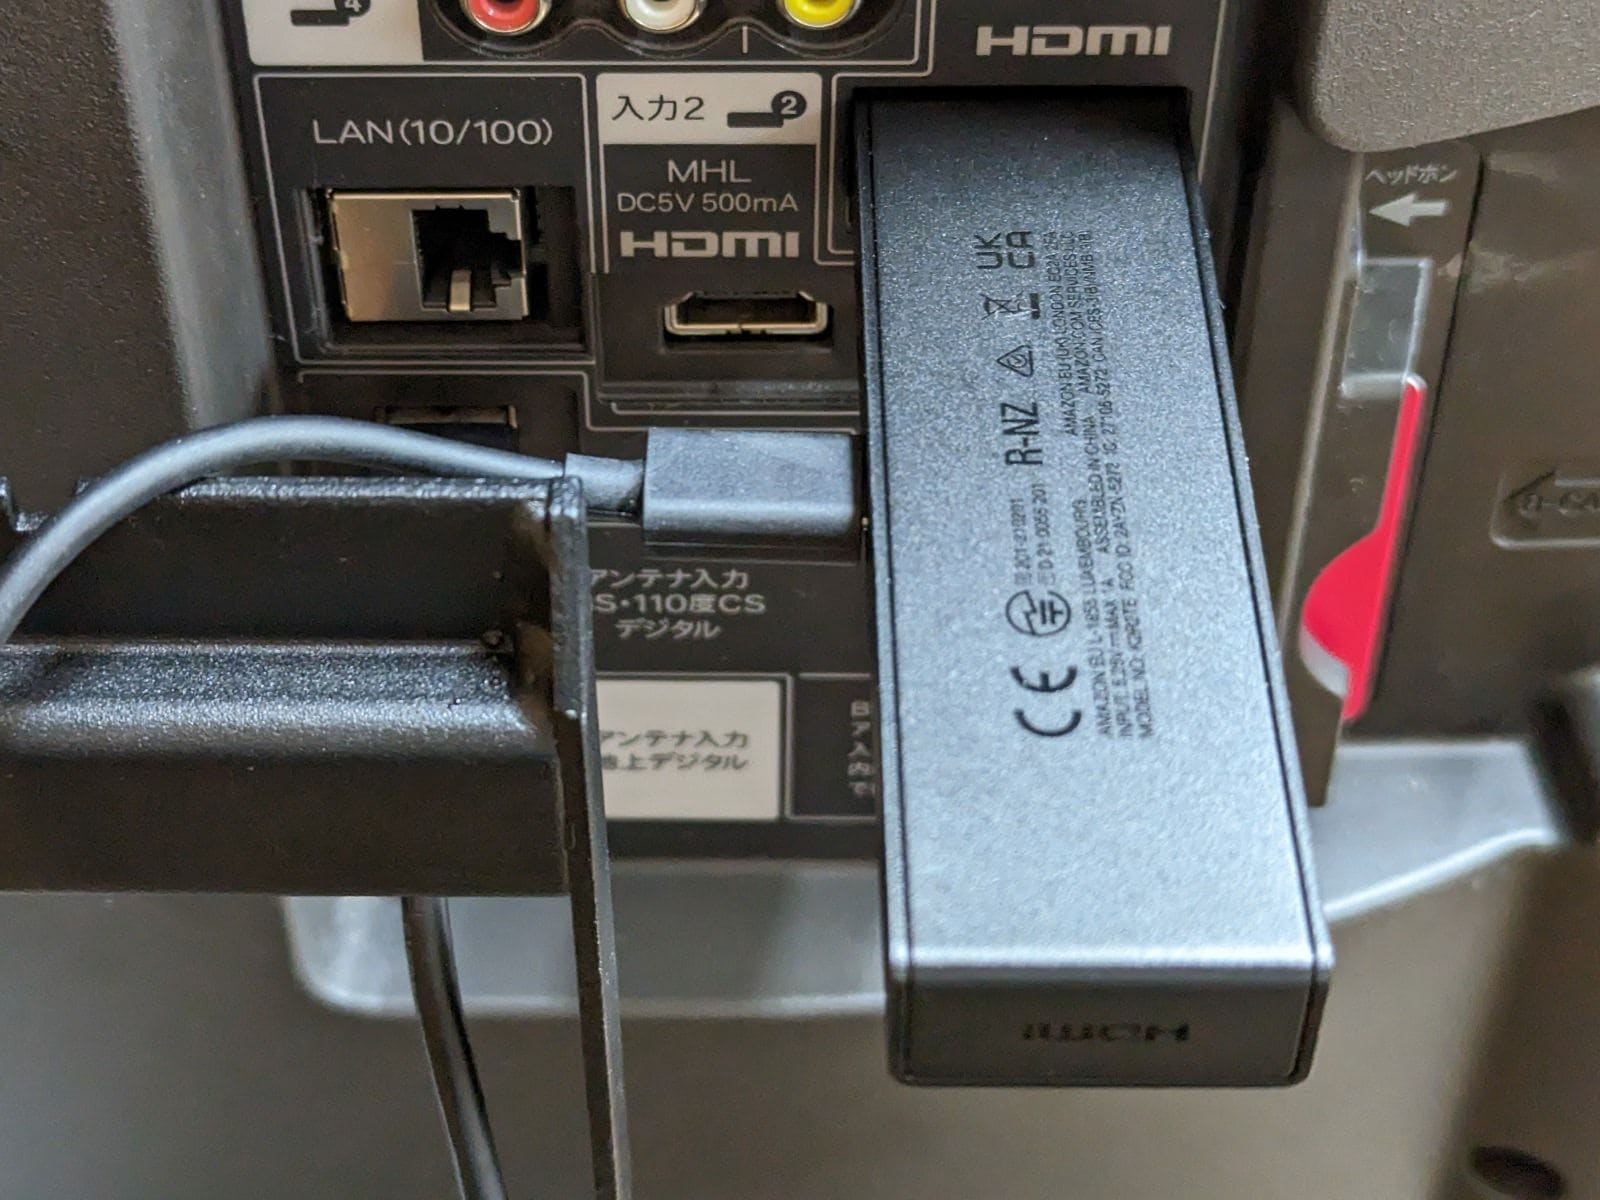 「Fire TV Stick」をテレビ背面のHDMIポートに接続した様子。給電ケーブルが真横に伸びるので取り回しはあまりよくありません